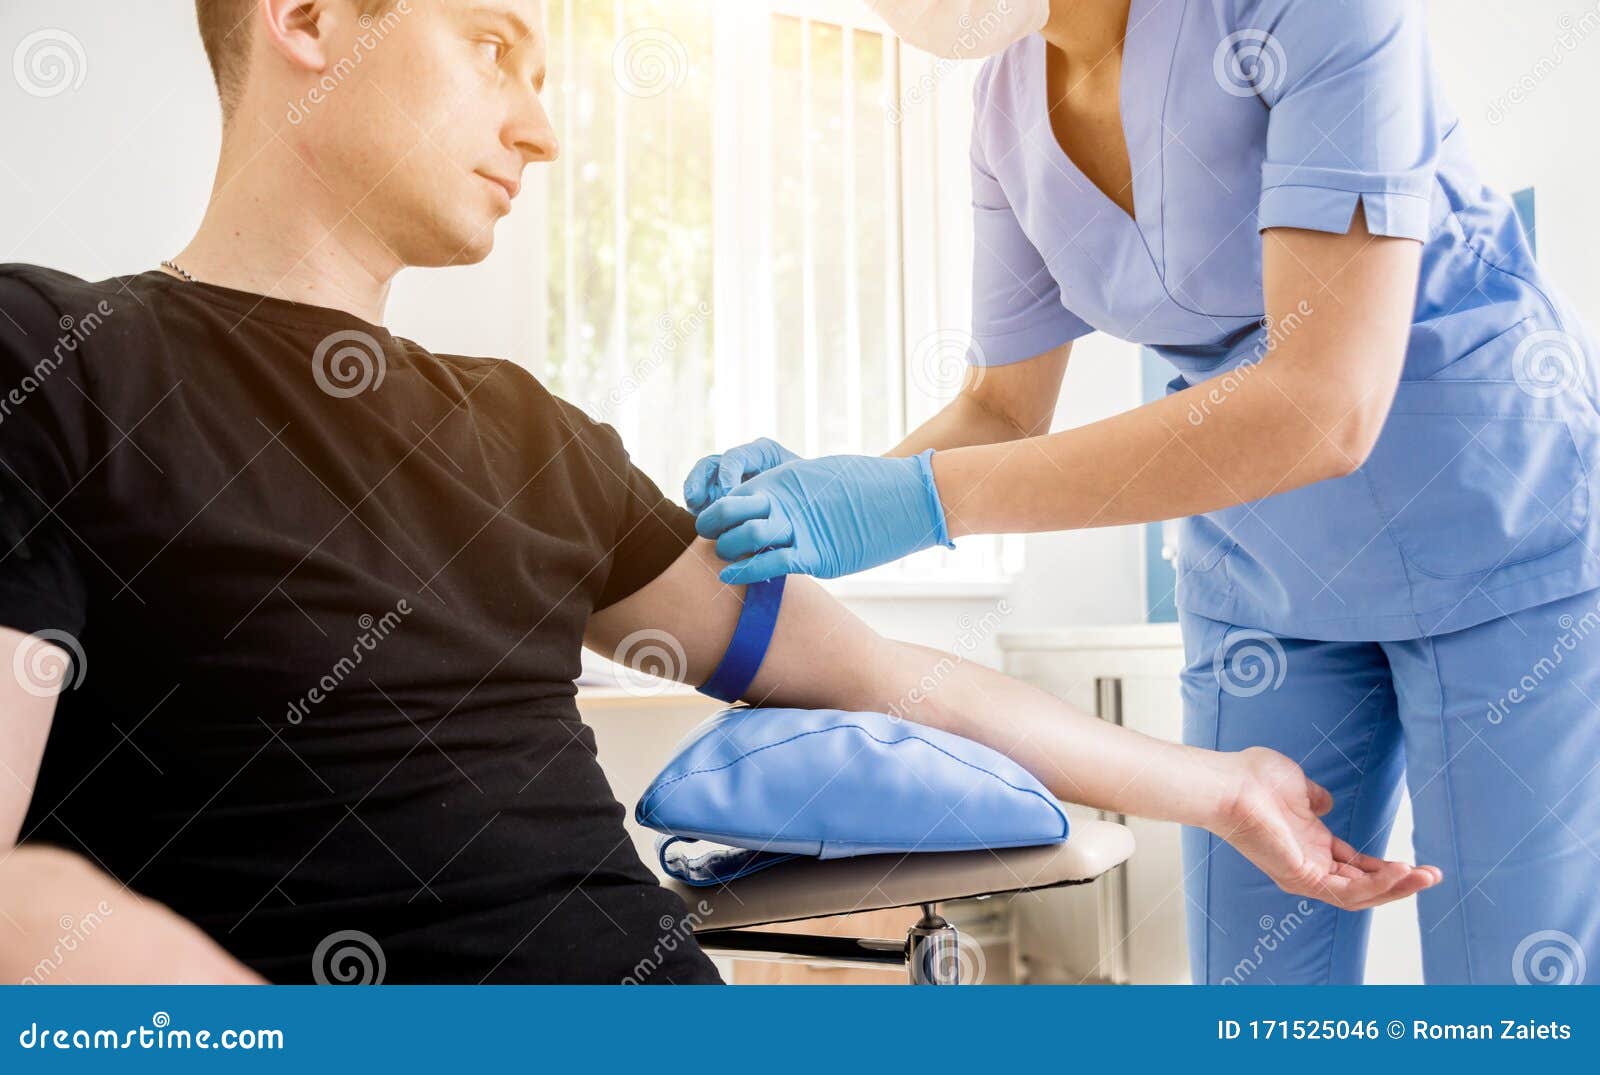 nurse home visit blood test